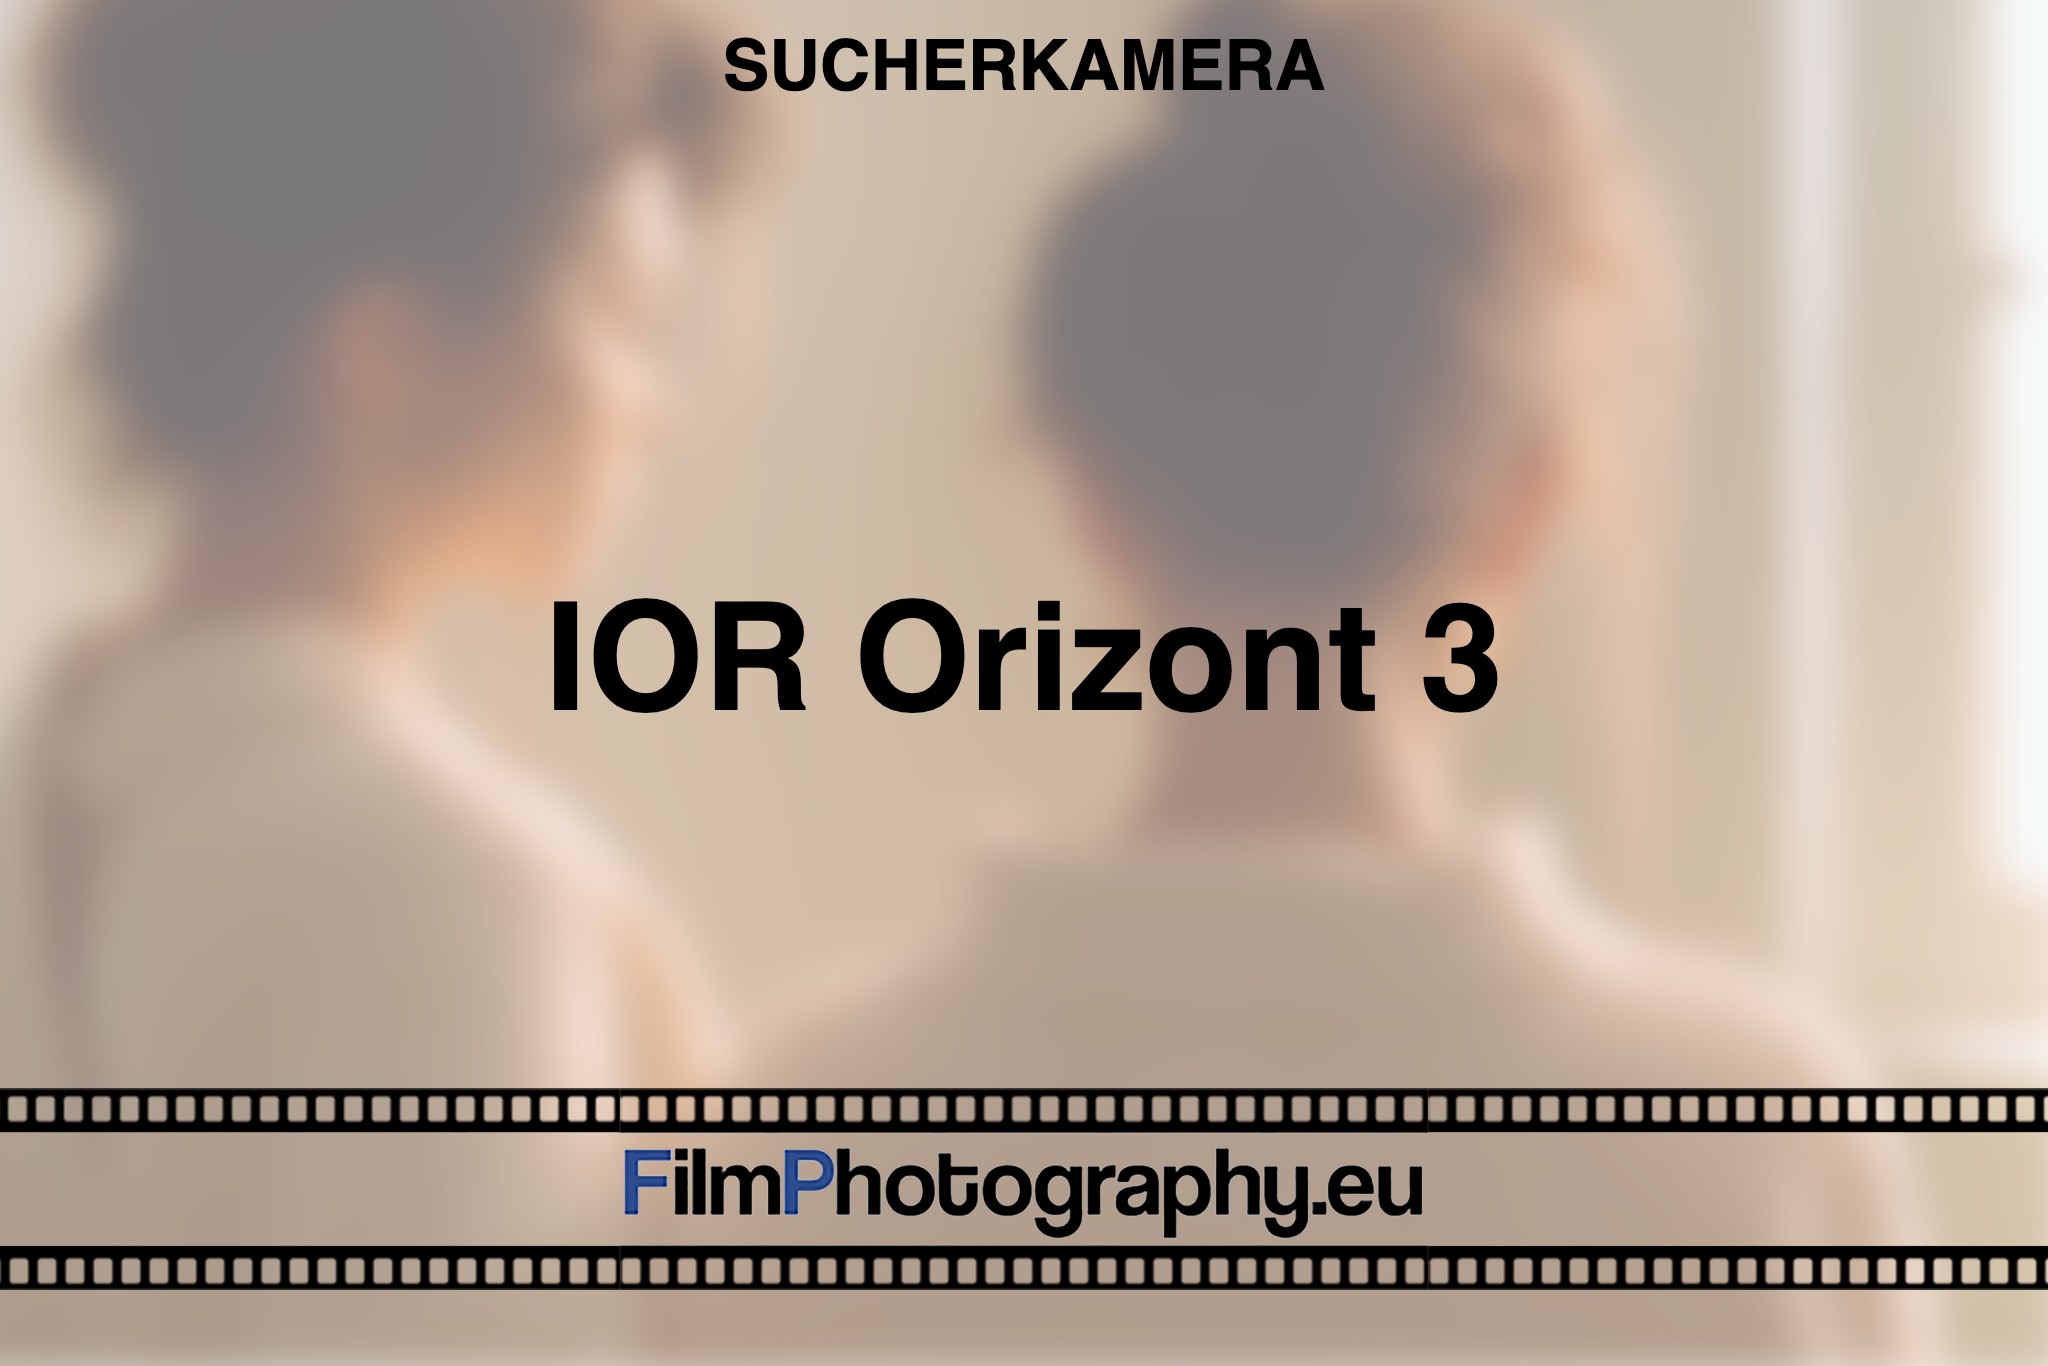 ior-orizont-3-sucherkamera-bnv